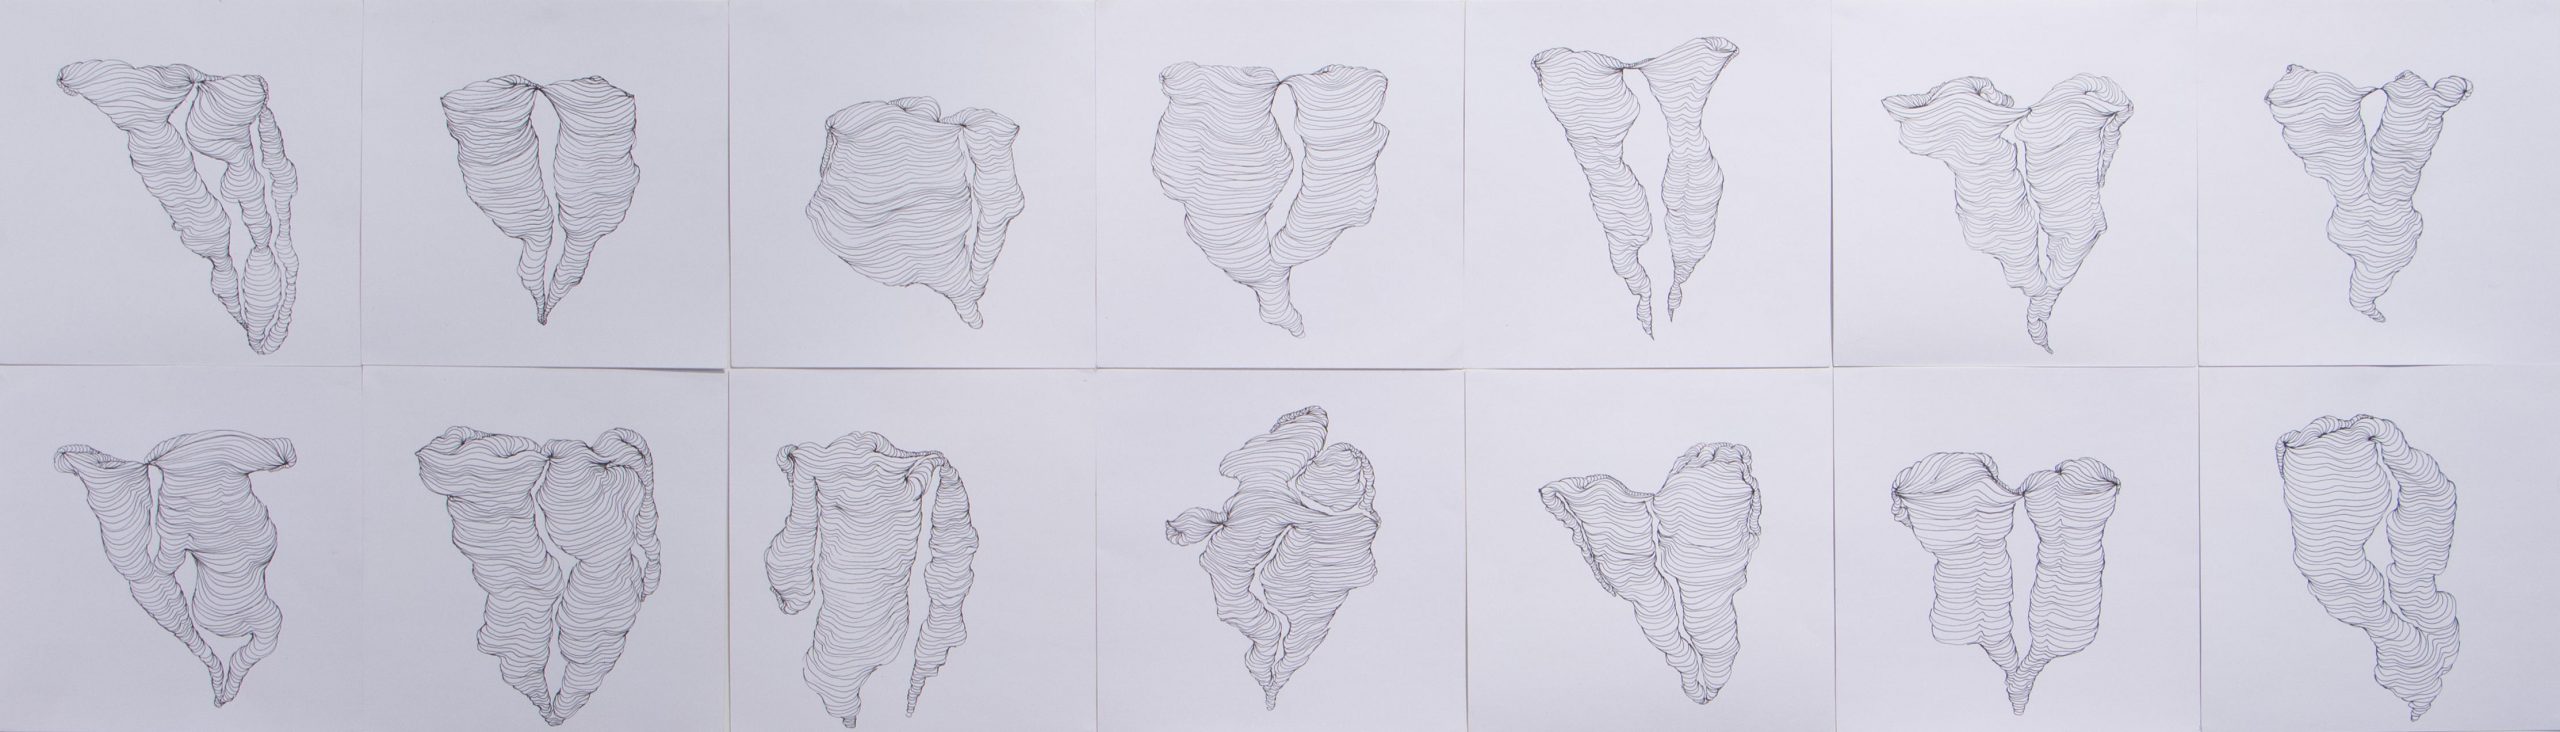 Corpolinha múltiplo, Anna Moraes, 2018. Desenho, caneta nanquim sobre papel, 20x20cm cada.